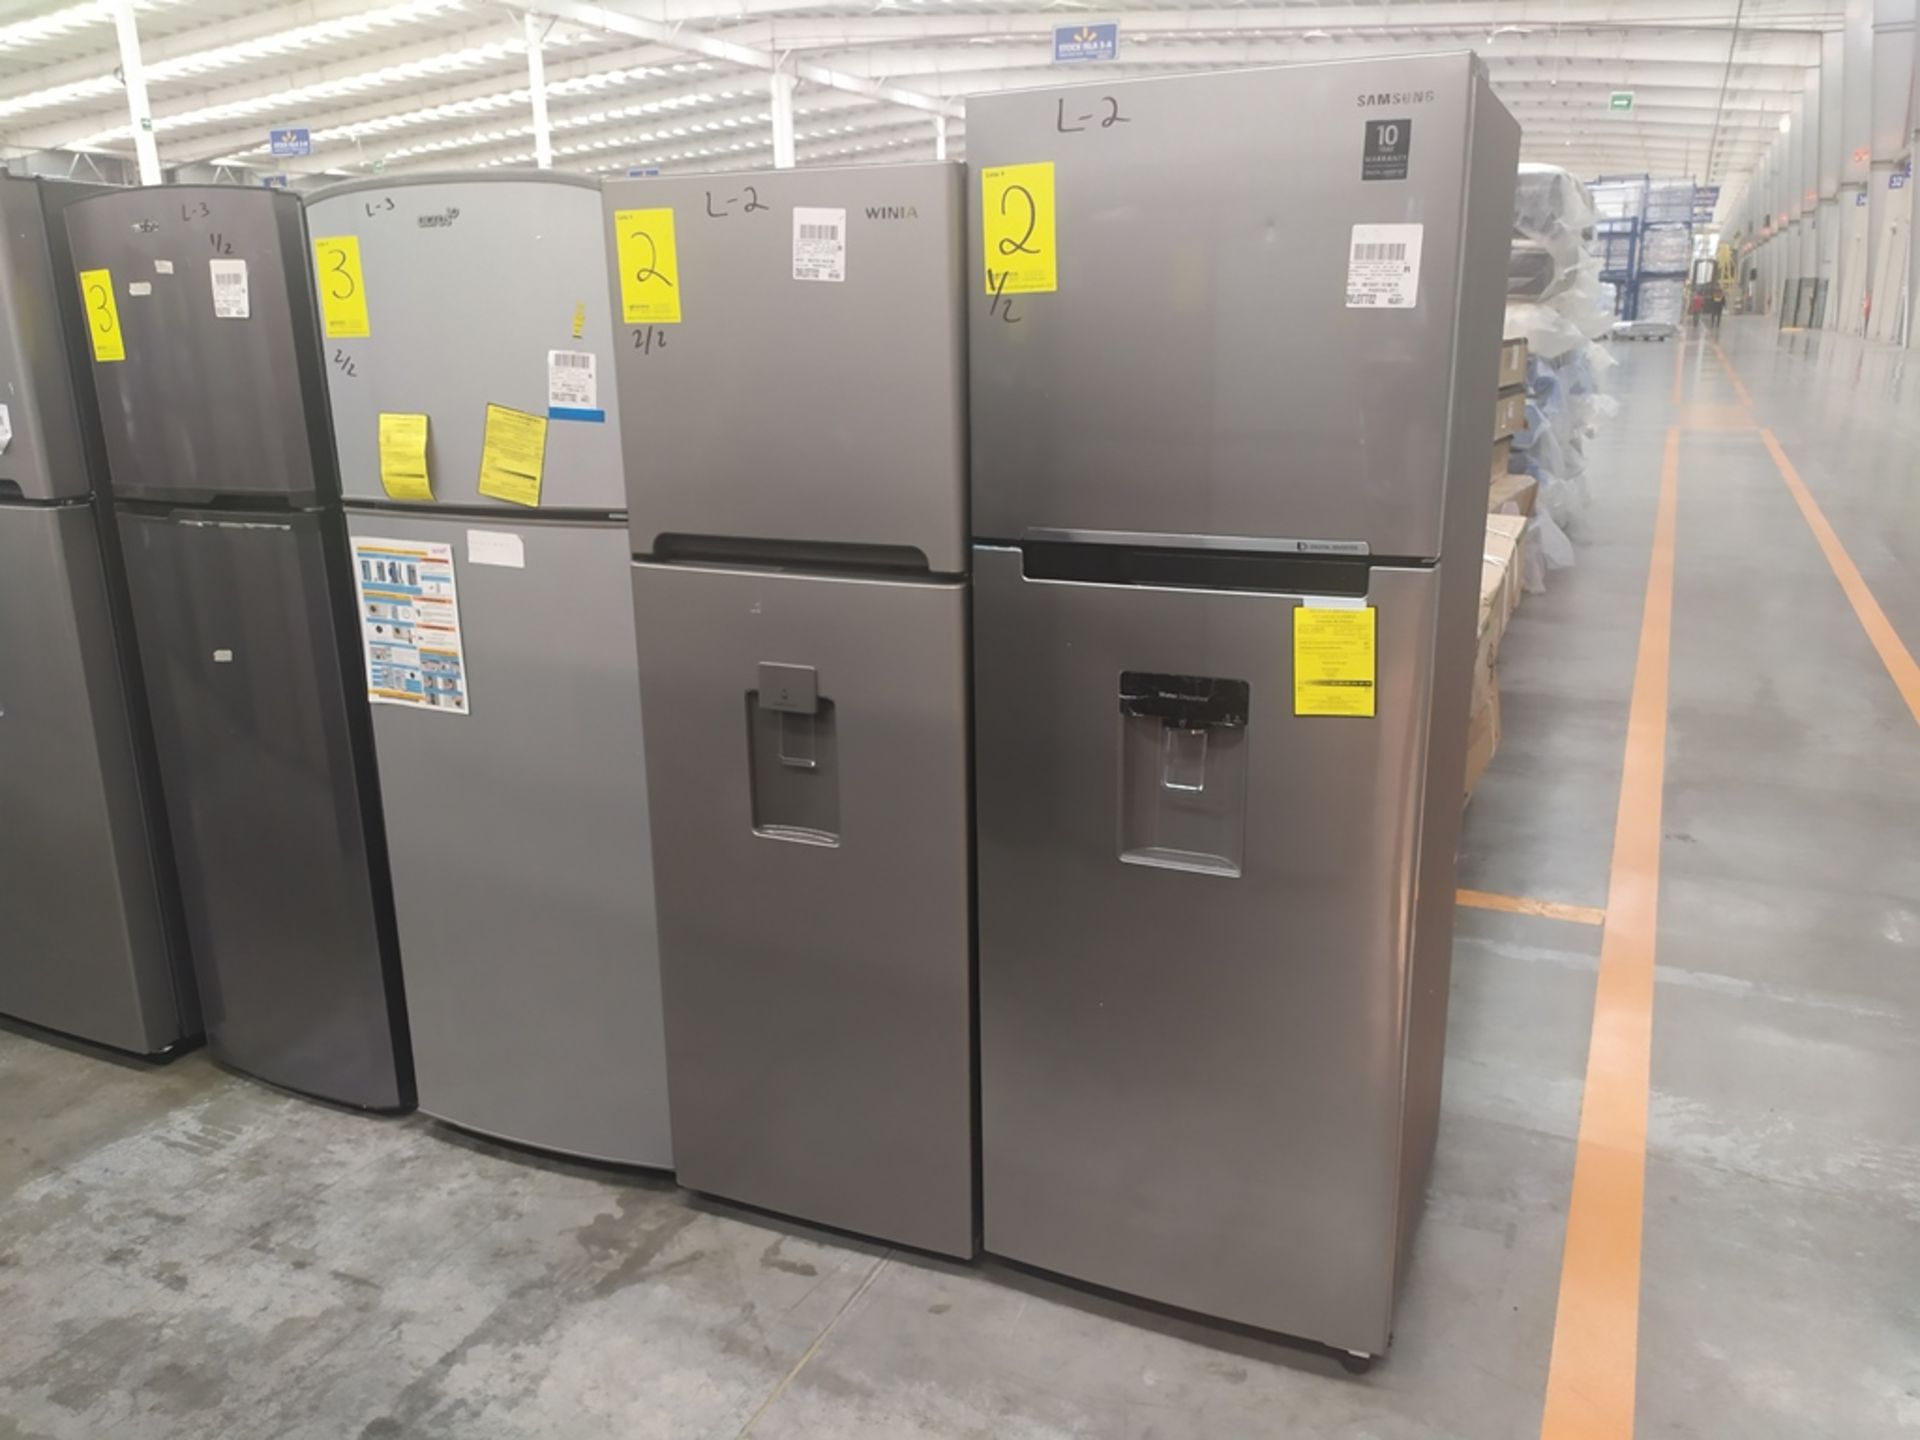 2 Refrigeradores, uno Marca Samsung, Modelo RT32K5710S8, Serie 0ARB4BAR600275H, Color Gris con disp - Image 3 of 9